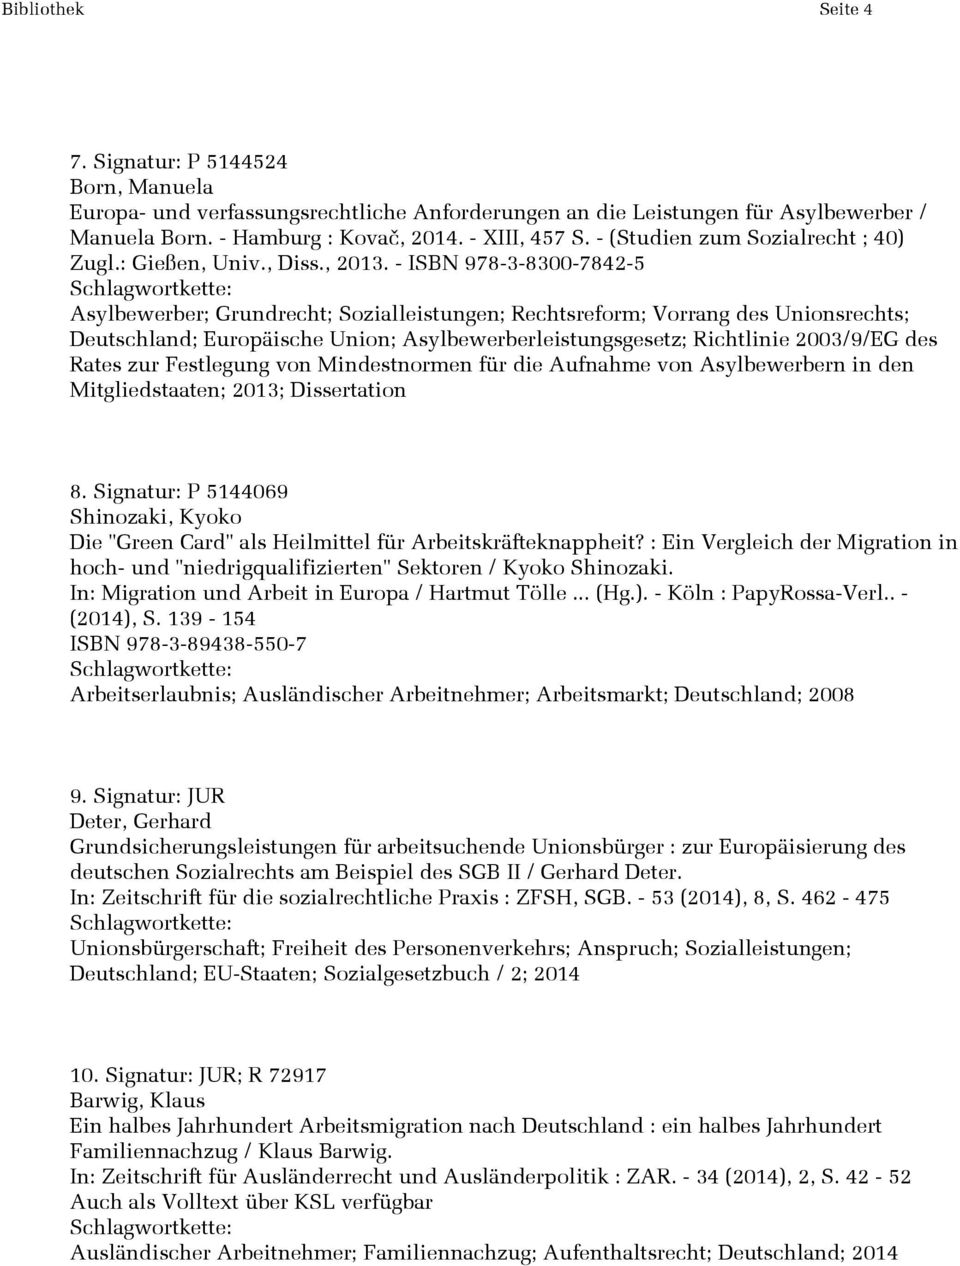 - ISBN 978-3-8300-7842-5 Asylbewerber; Grundrecht; Sozialleistungen; Rechtsreform; Vorrang des Unionsrechts; Deutschland; Europäische Union; Asylbewerberleistungsgesetz; Richtlinie 2003/9/EG des